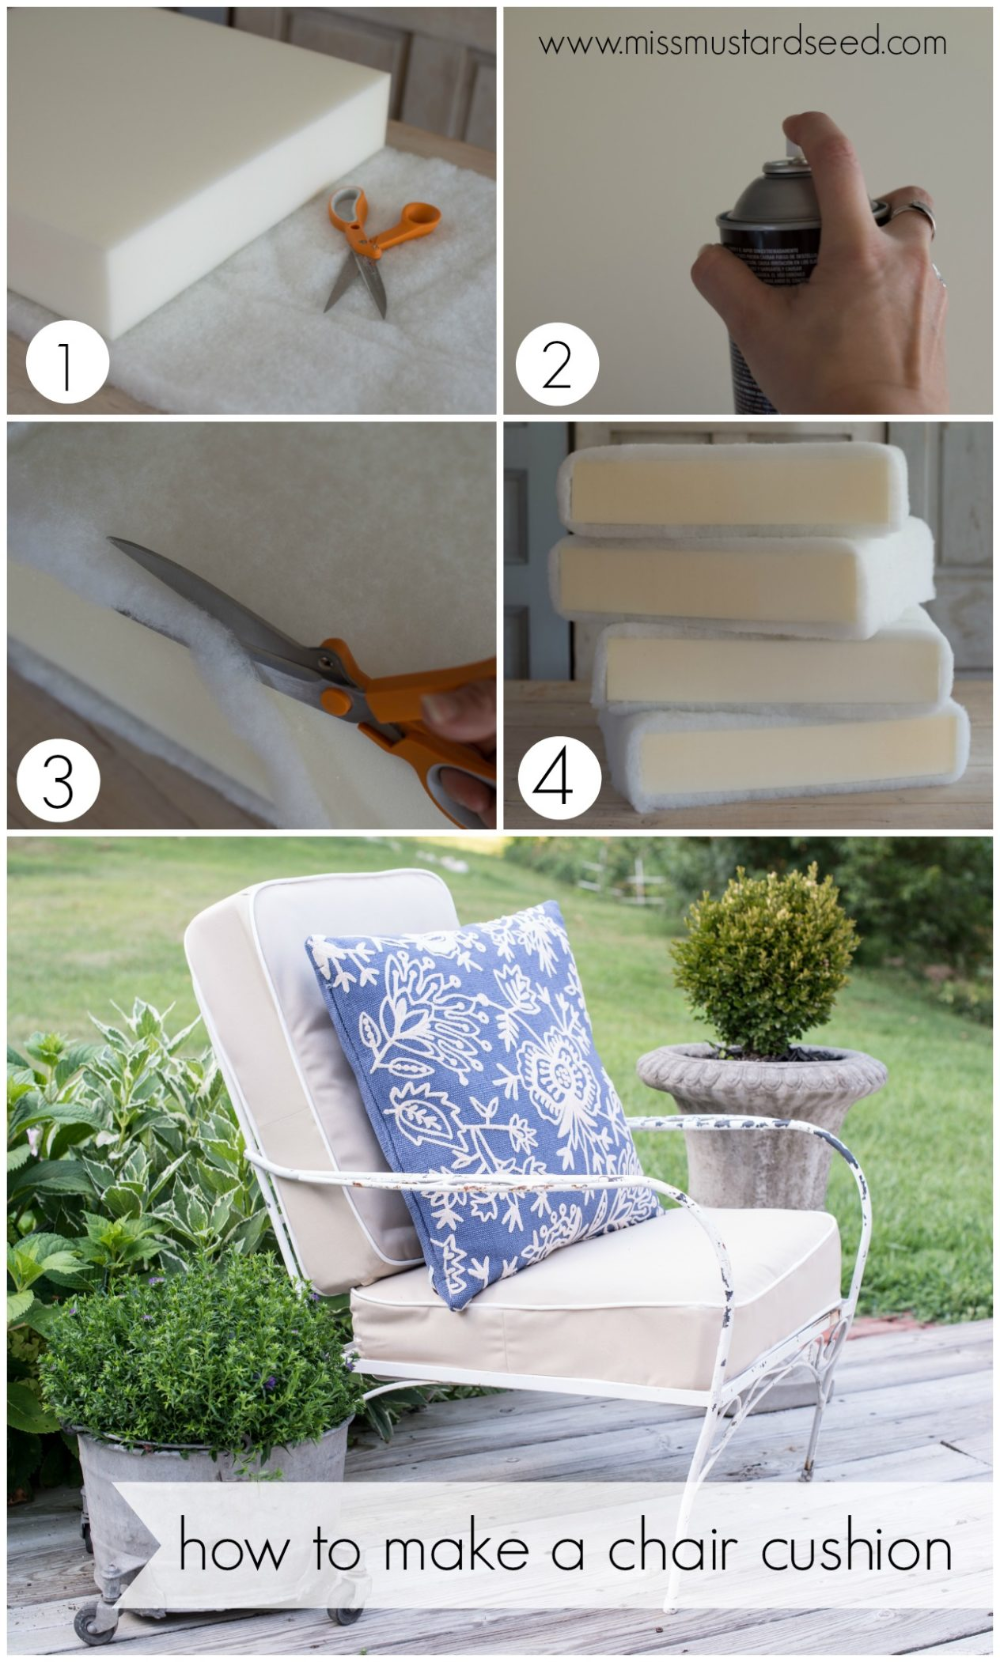 how to make a chair cushion | deck chair makeover - how to make a chair cushion | deck chair makeover -   18 diy Outdoor cushions ideas